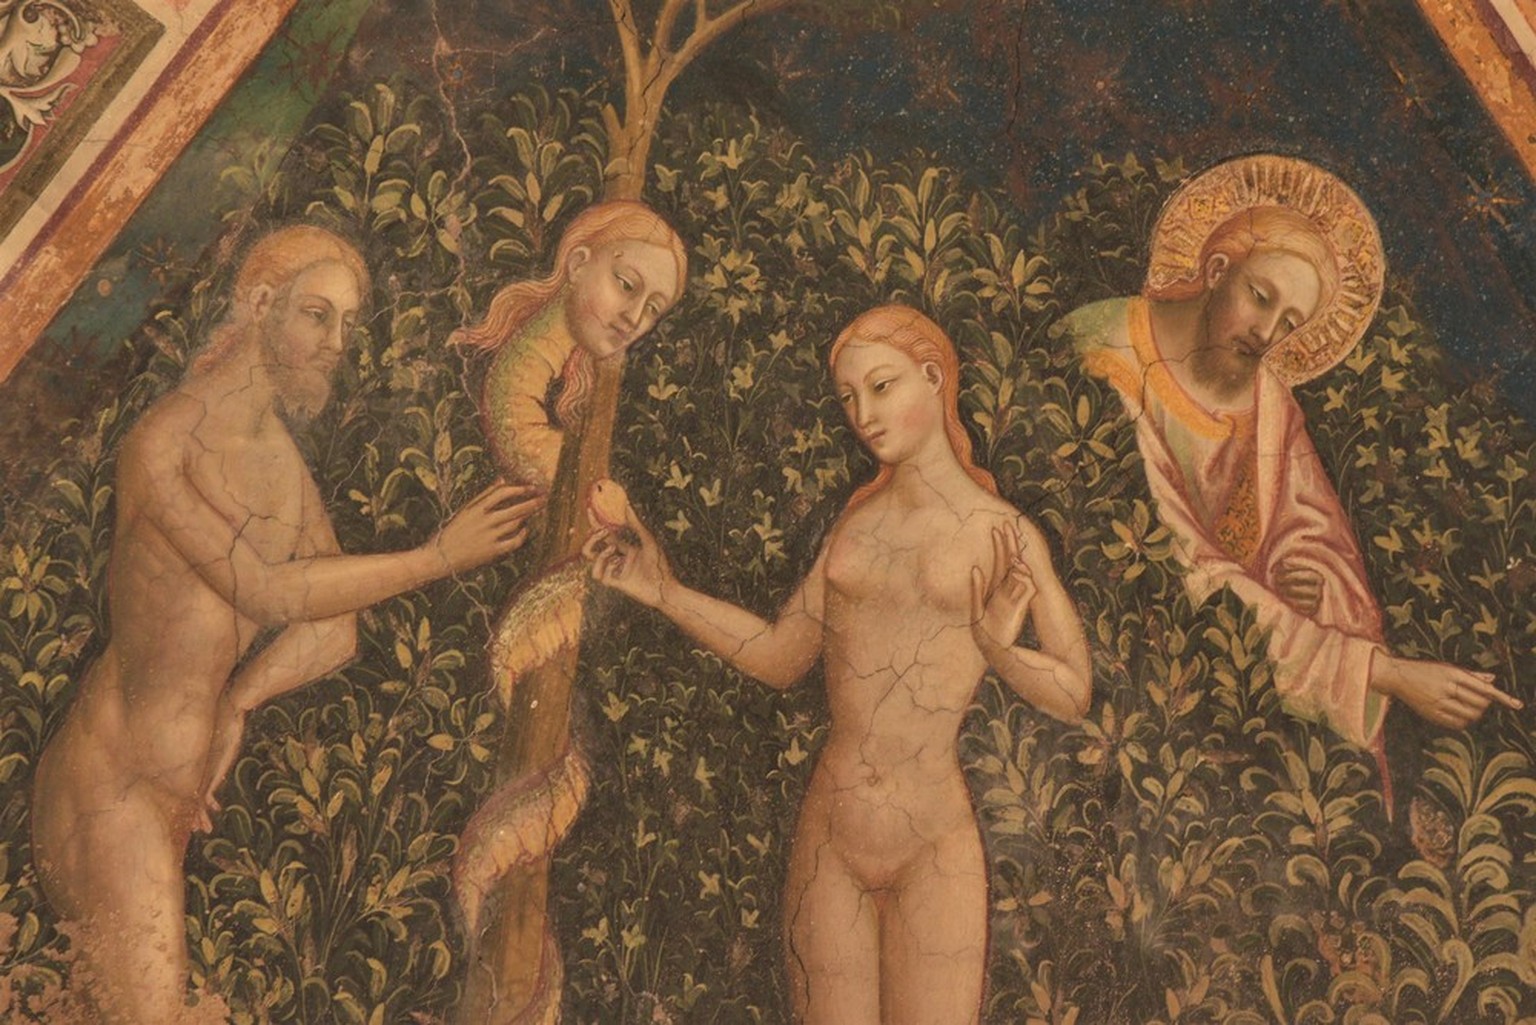 Spätgotische Darstellung des Sündenfalls: Die Schlange verführt Adam und Eva dazu, die Frucht vom Baum der Erkenntnis zu essen, während Gott ihnen vergeblich den richtigen Weg zeigt.